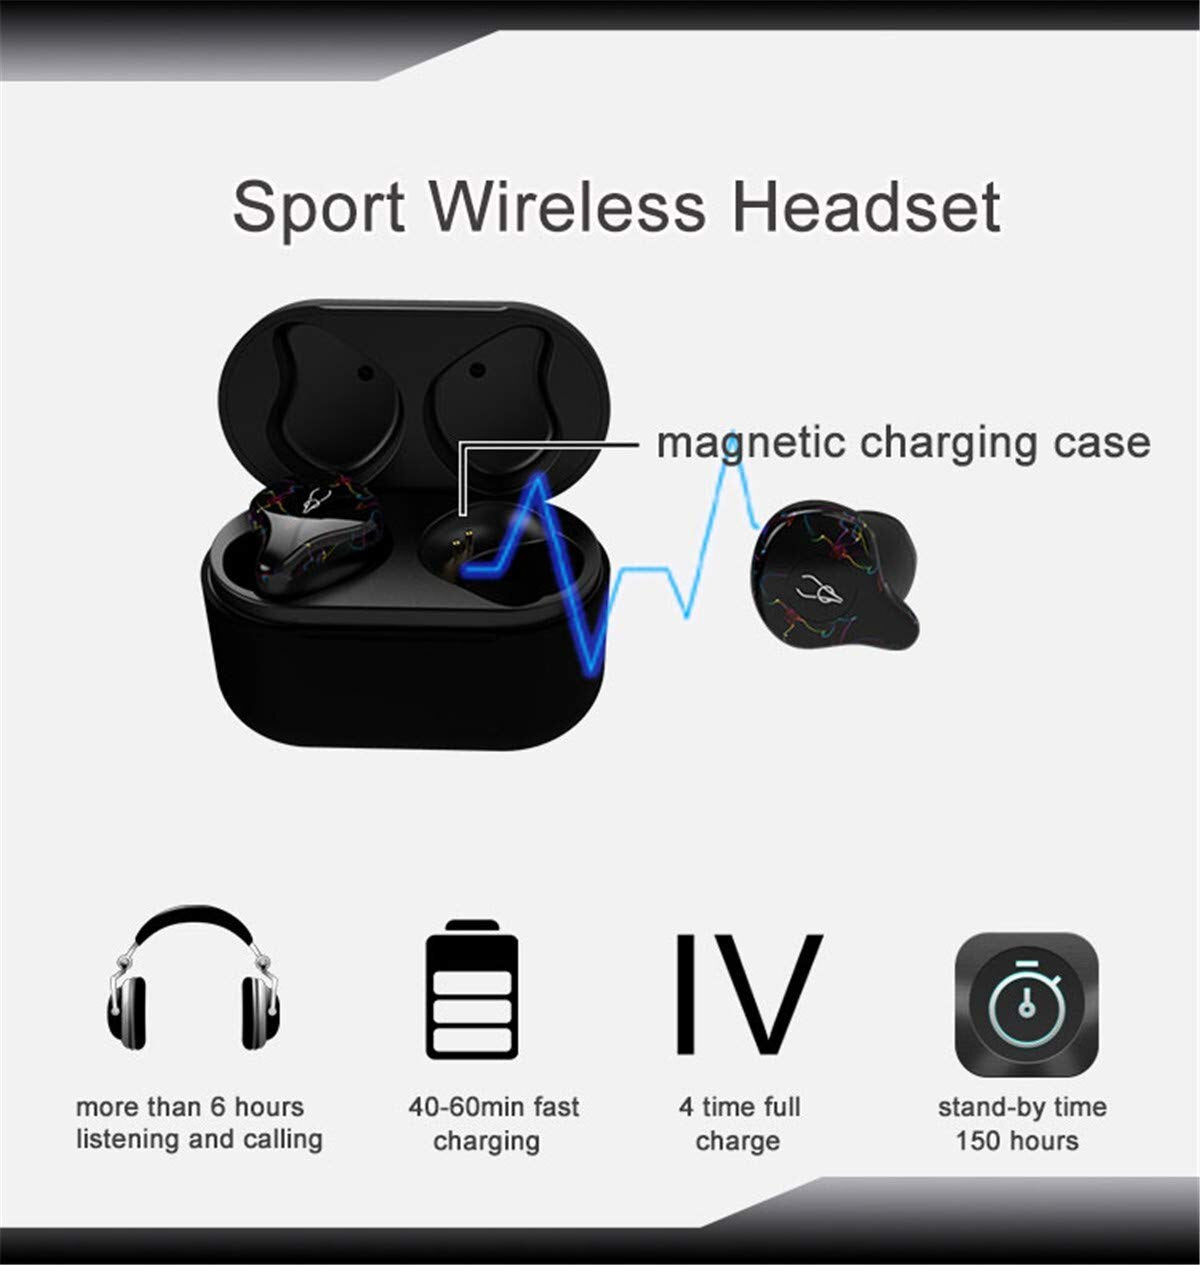 Sabbat X12 Pro TWS Earbuds | Hifi Media Store